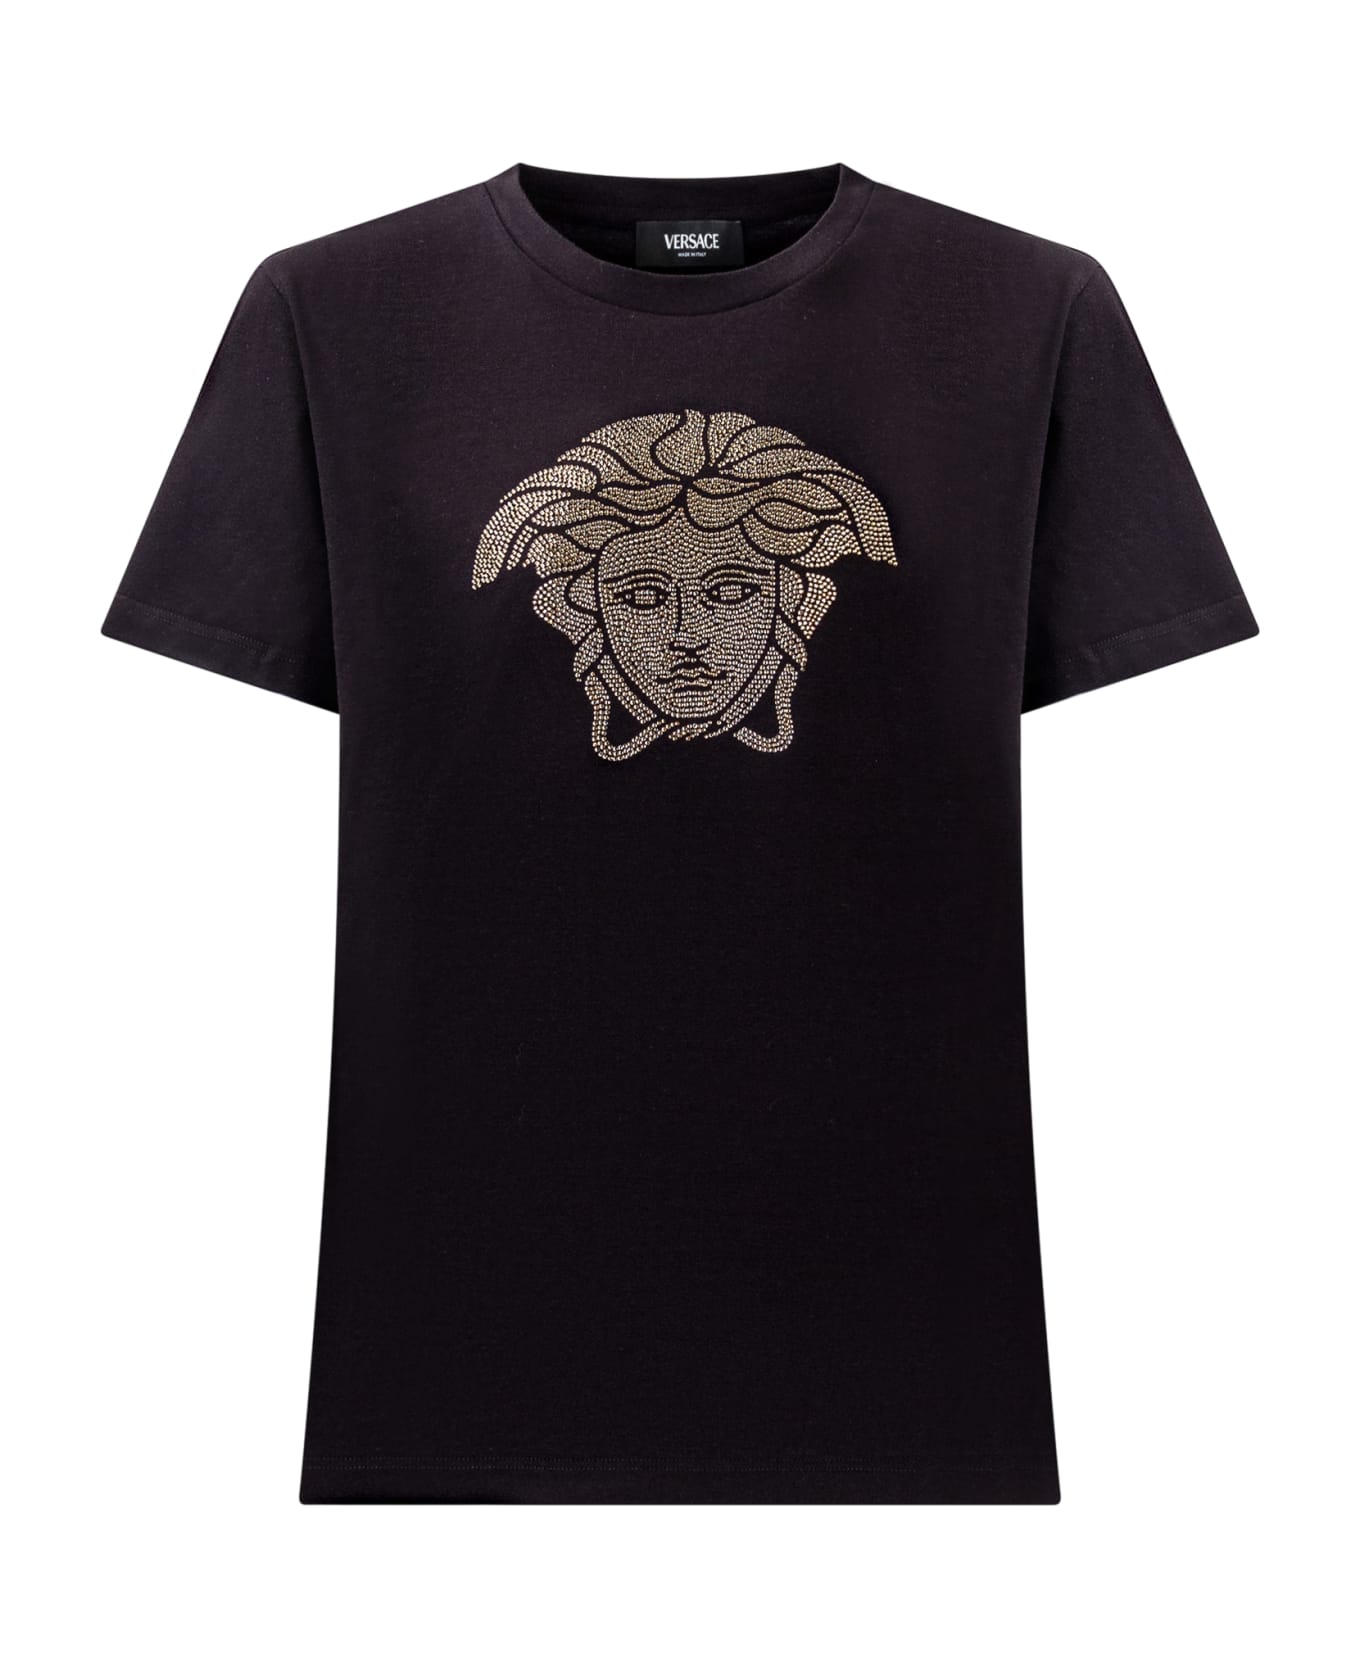 Versace Medusa T-shirt - NERO-ORO